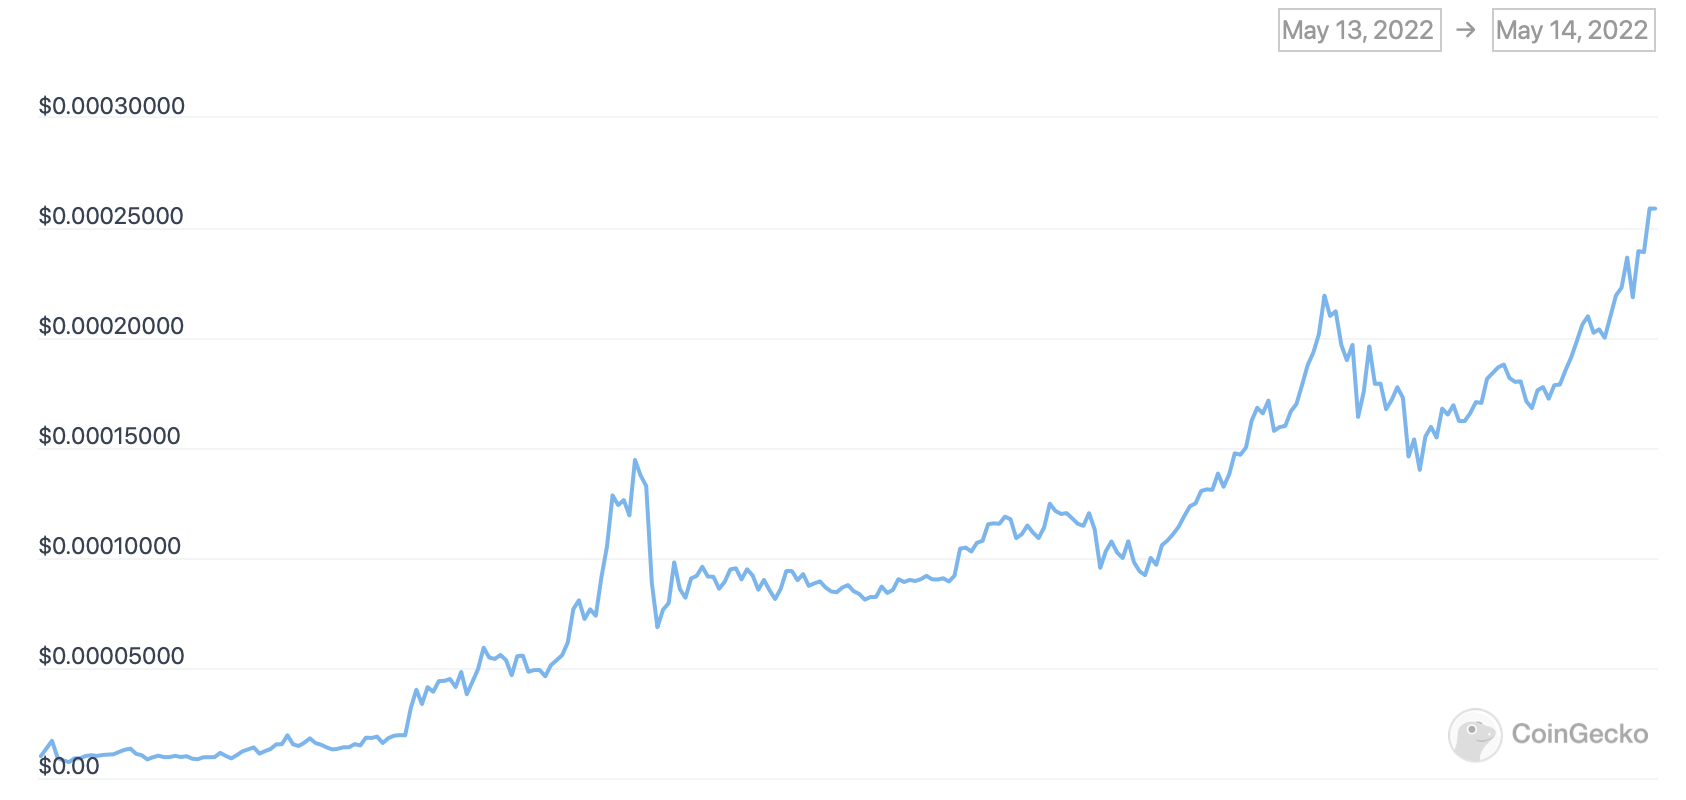 Звезда YouTube потерял миллионы долларов на вложениях в криптовалюту LUNA. Как быстро это случилось? График курса LUNA за последние сутки. Фото.